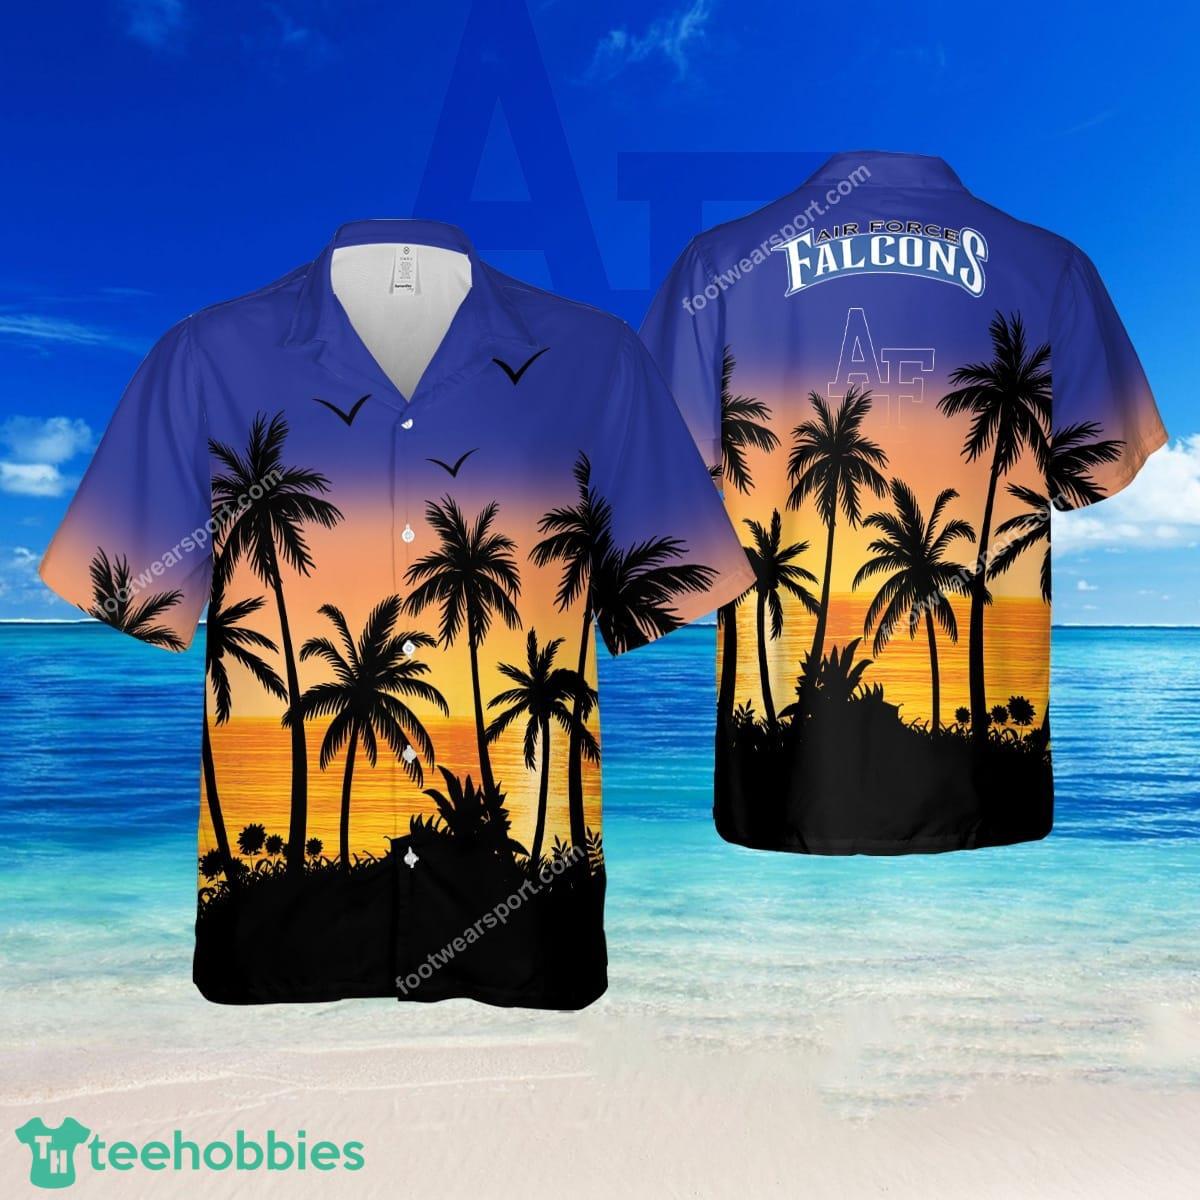 NCAA Air Force Falcons Handmade Brand Beach Hawaiian Shirt For Summer - NCAA Air Force Falcons Handmade Brand Beach Hawaiian Shirt For Summer